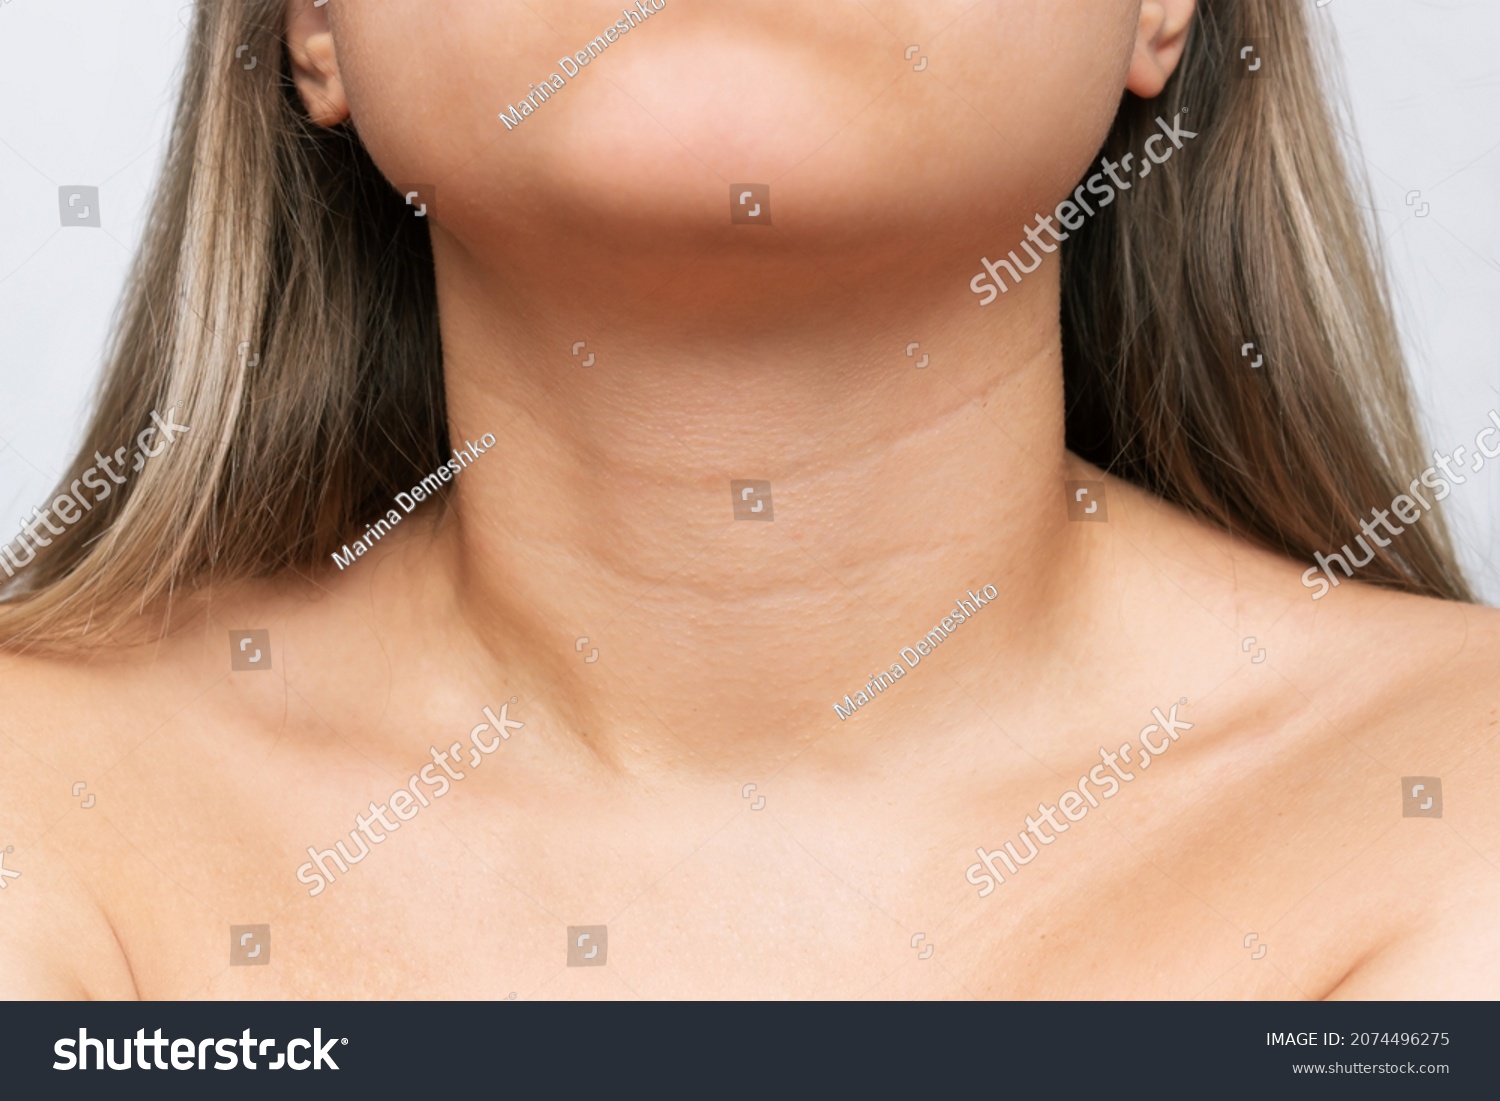 Neck and collarbones